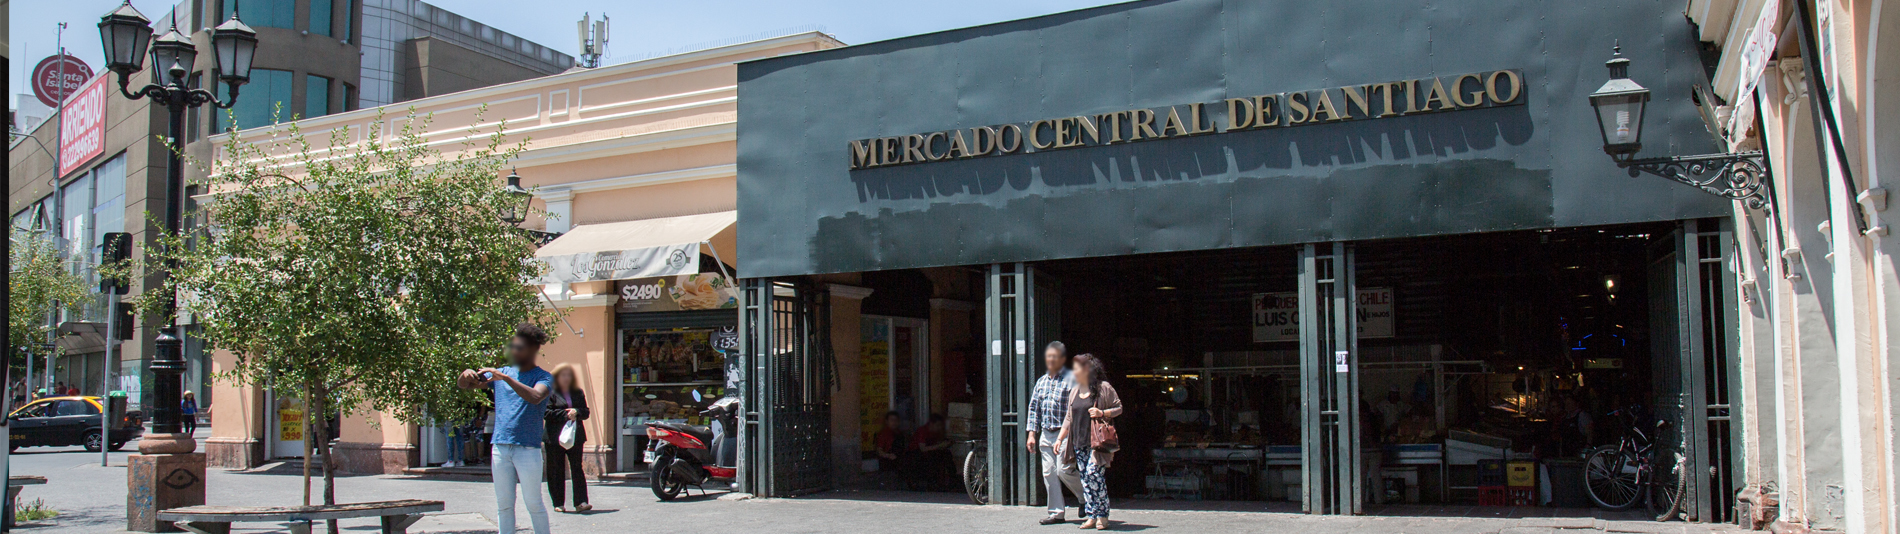 Turismo - Mercado Central